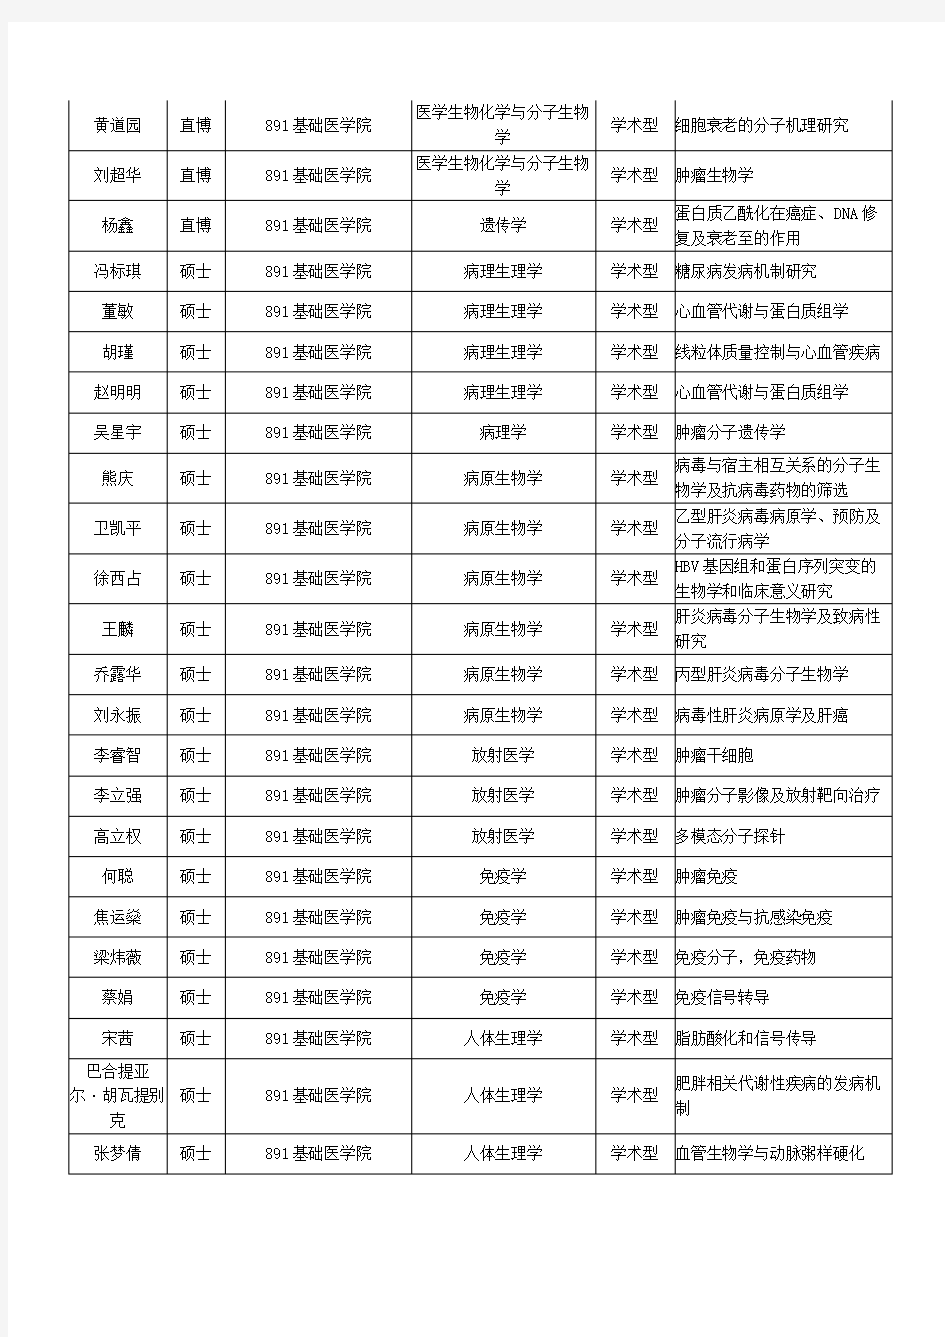 北京大学医学部推荐免试研究生含夏令营公示名单【VIP专享】